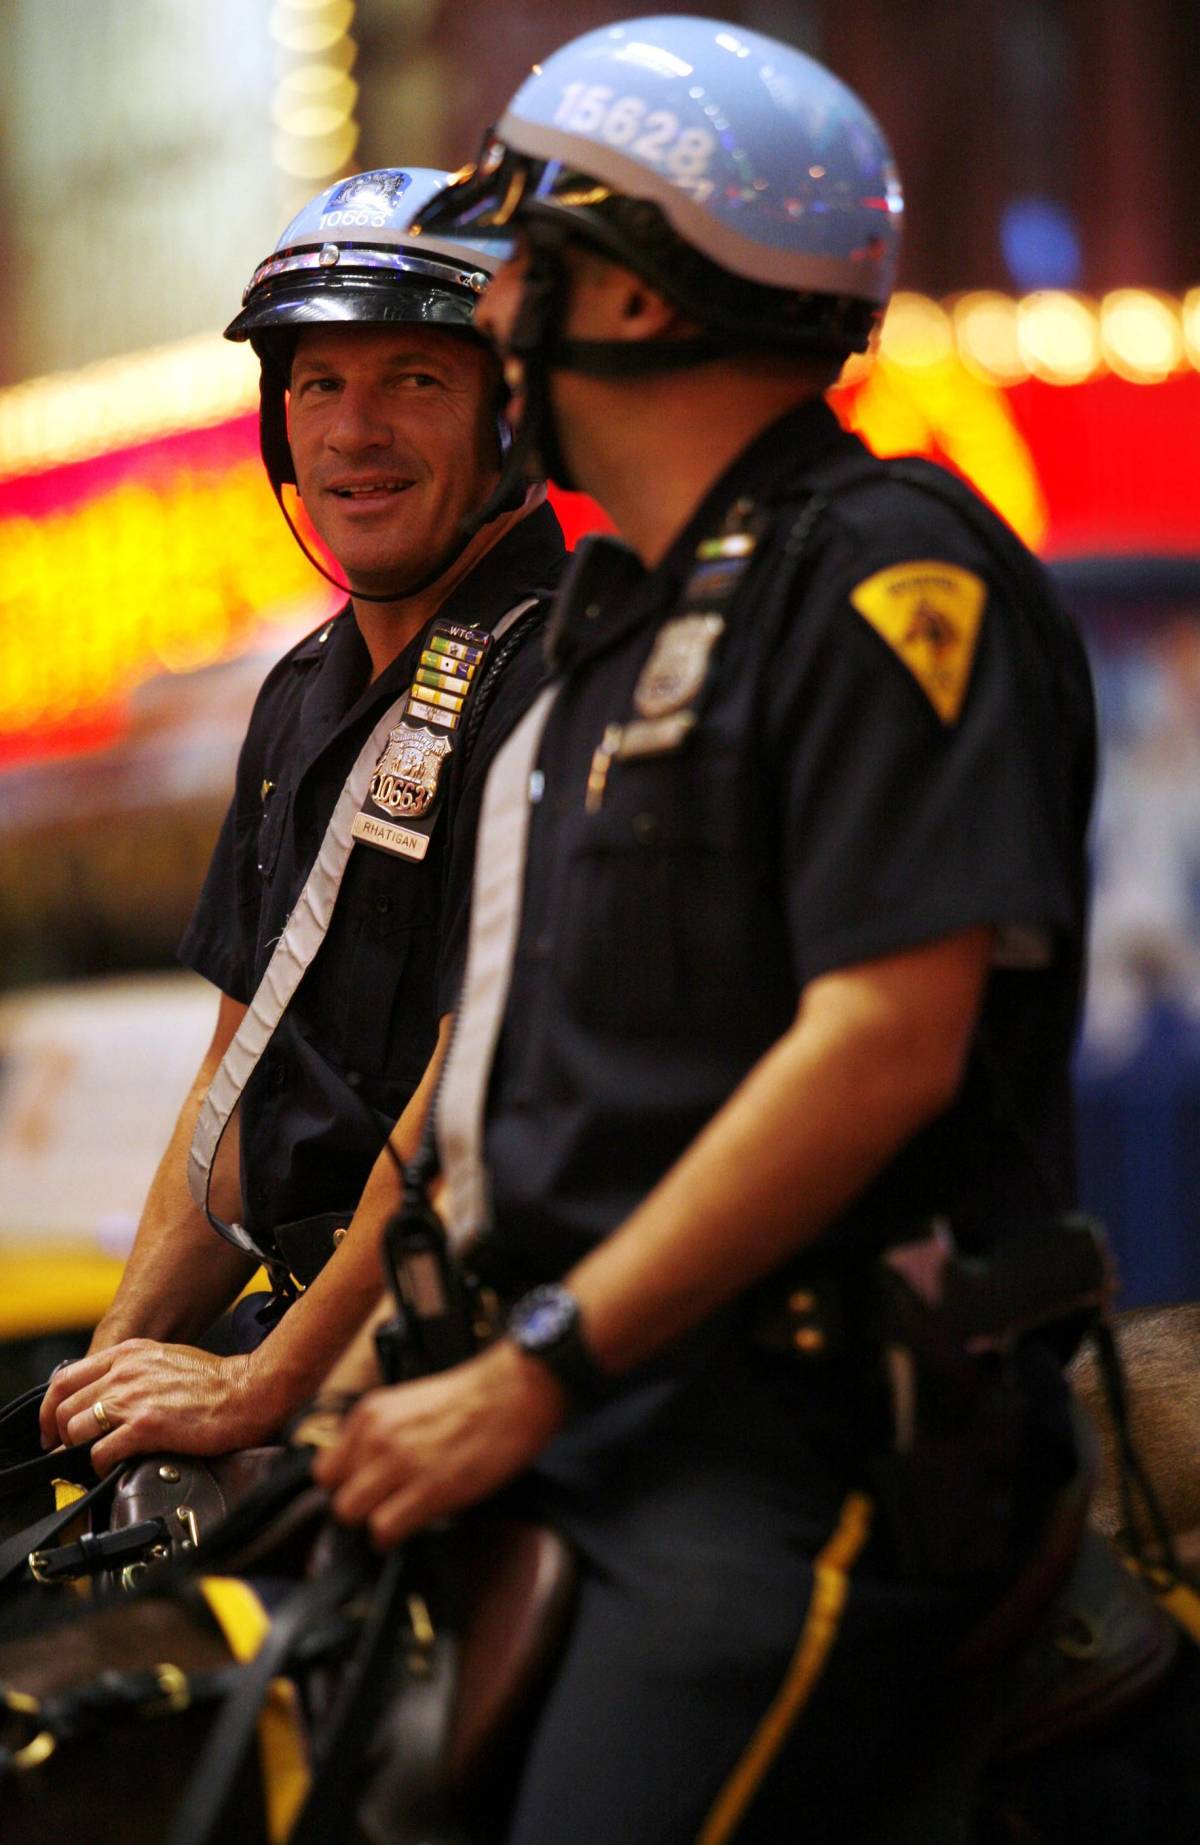 New York, fallita l'operazione simpatia della poliziaGli utenti twittano foto di violenze degli agenti